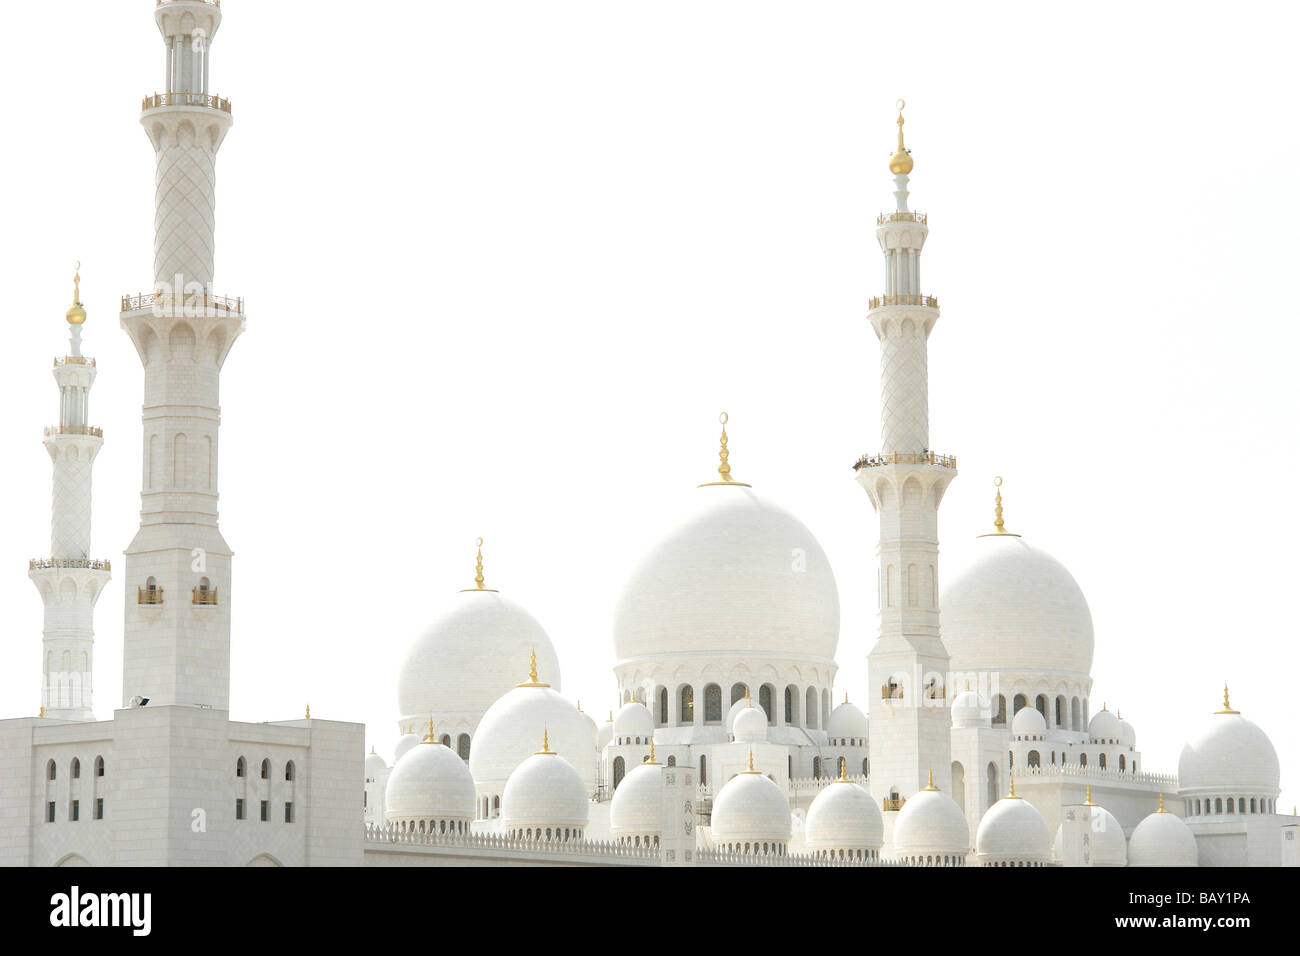 Zayed Grand Mosque, Sheikh Zayed Mosque, Abu Dhabi, United Arab Emirates, UAE Stock Photo